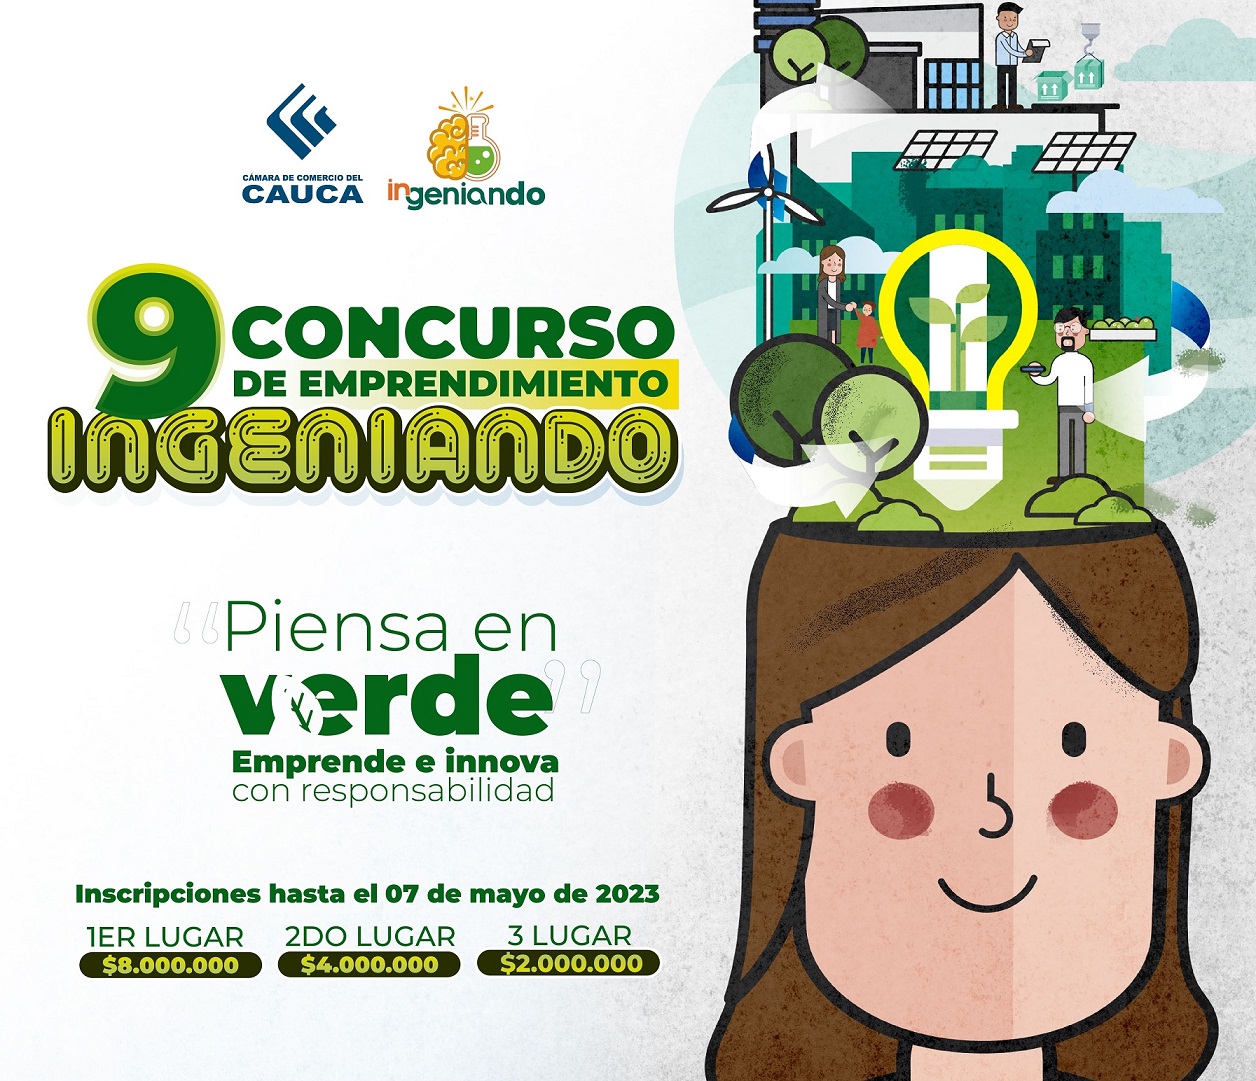 CONCURSO INGENIANDO CCCAUCA 2023